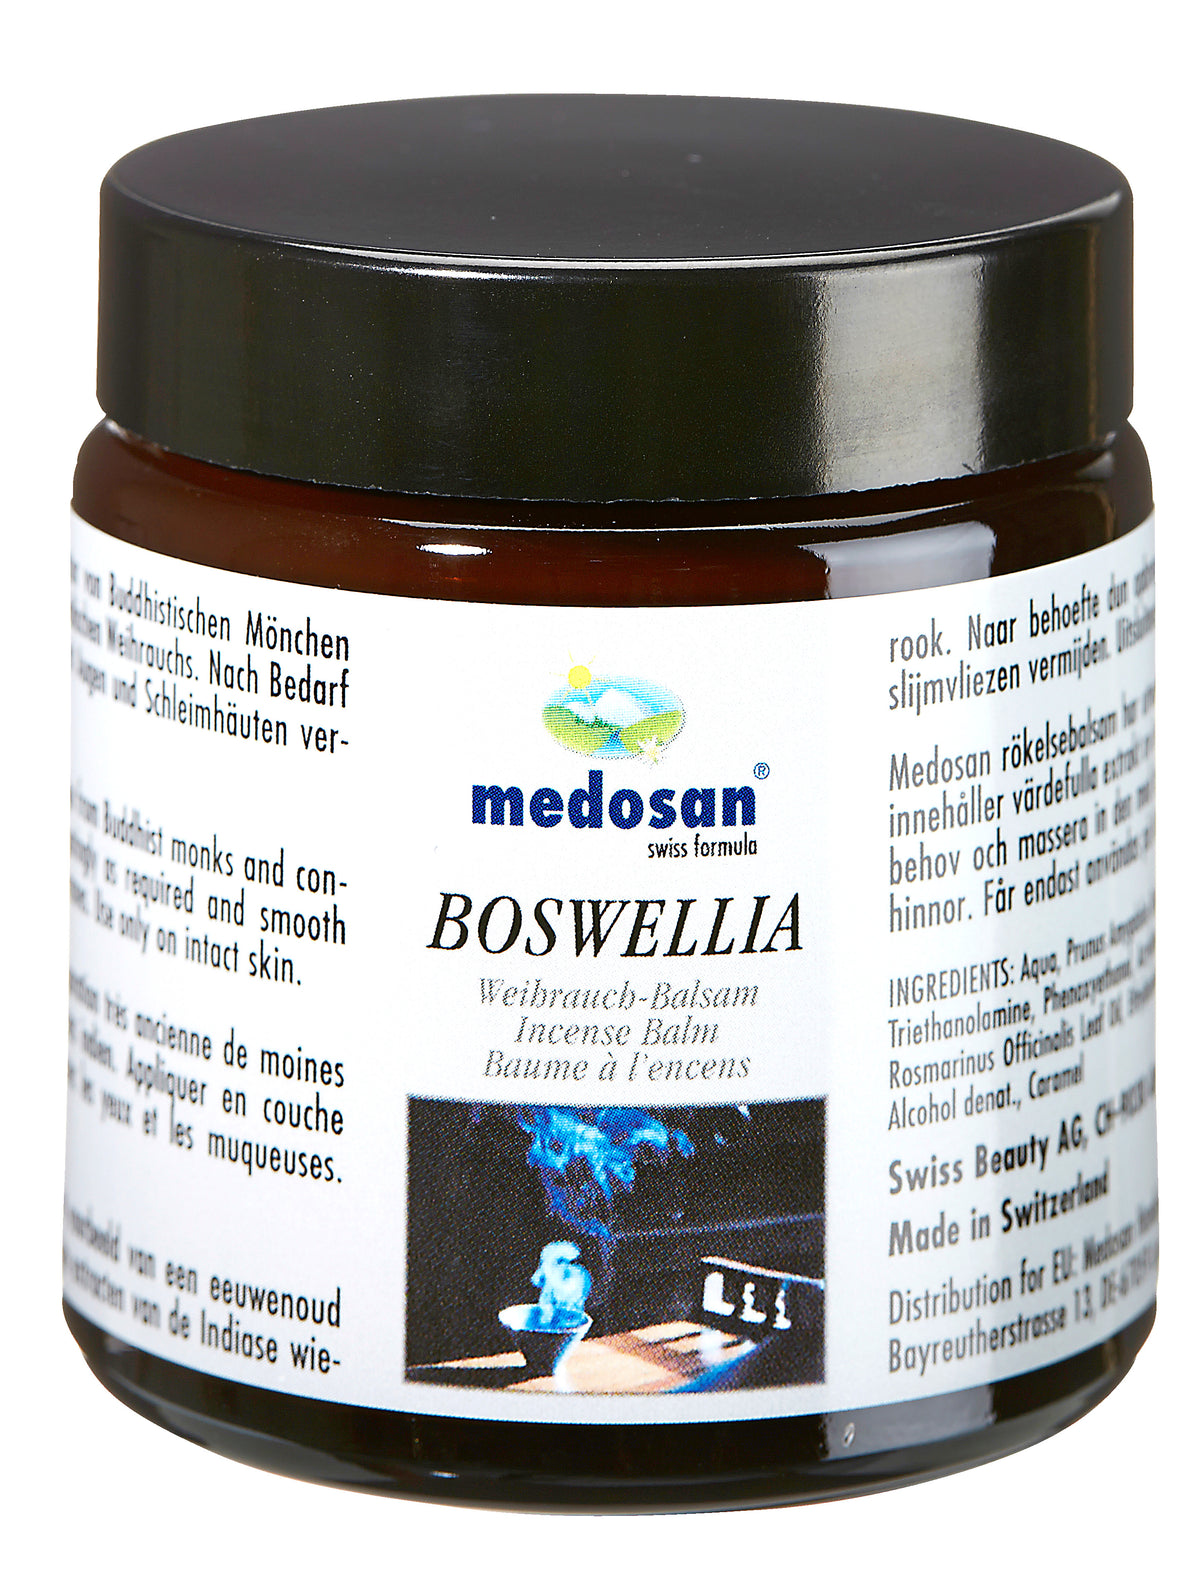 Boswellia Weihrauch-Balsam, 1 Stück